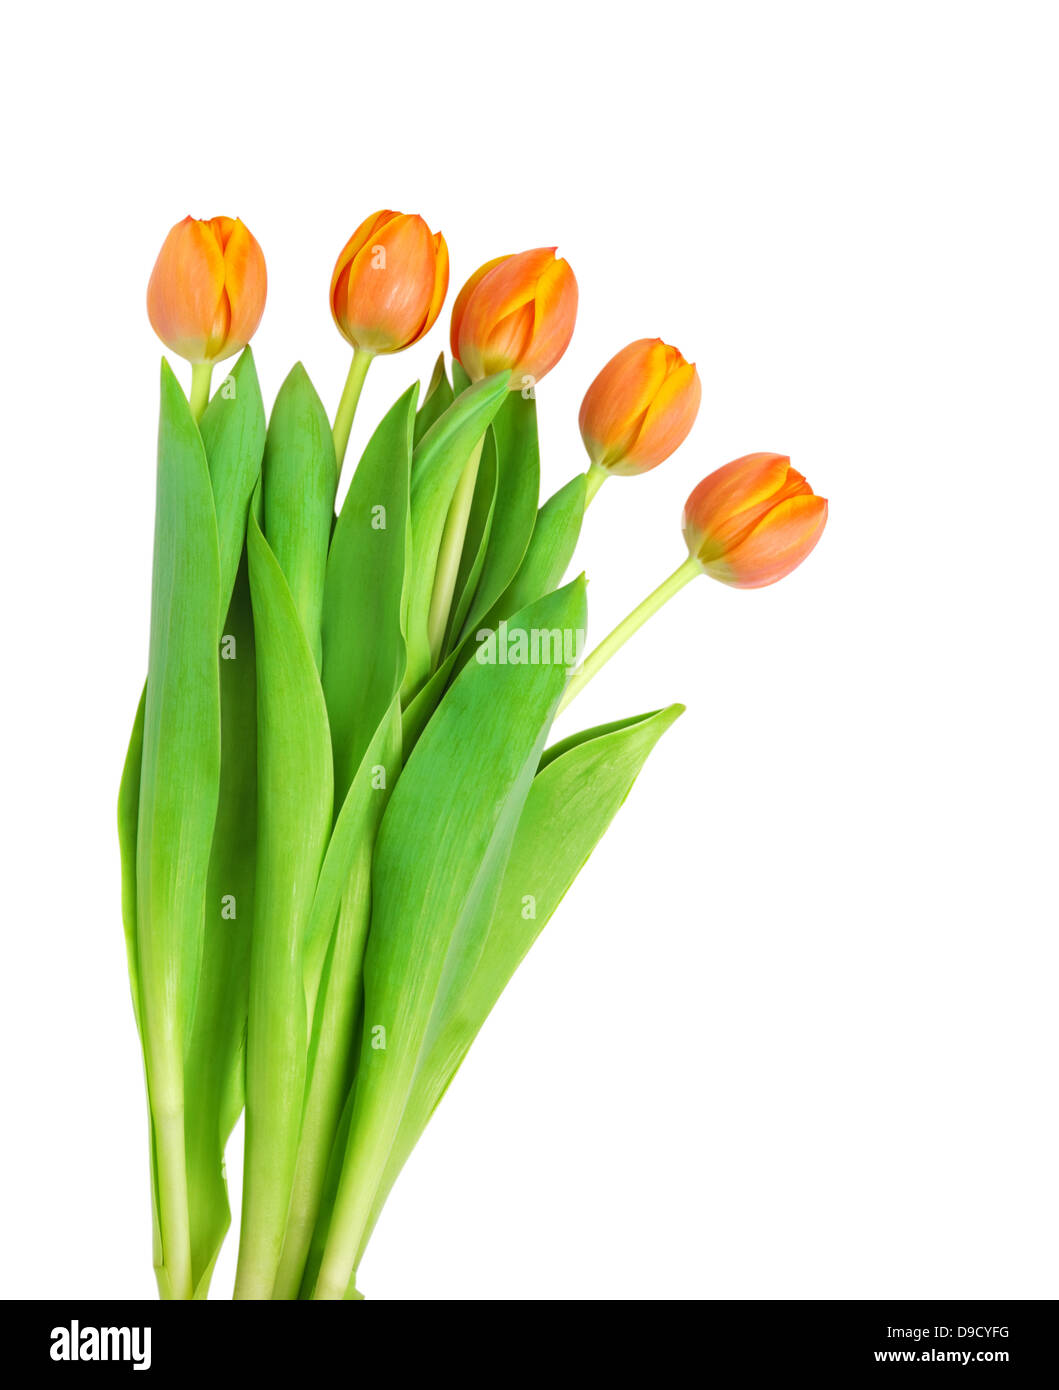 Bel colore arancione tulipani isolati su sfondo bianco.Shallow focus Foto Stock